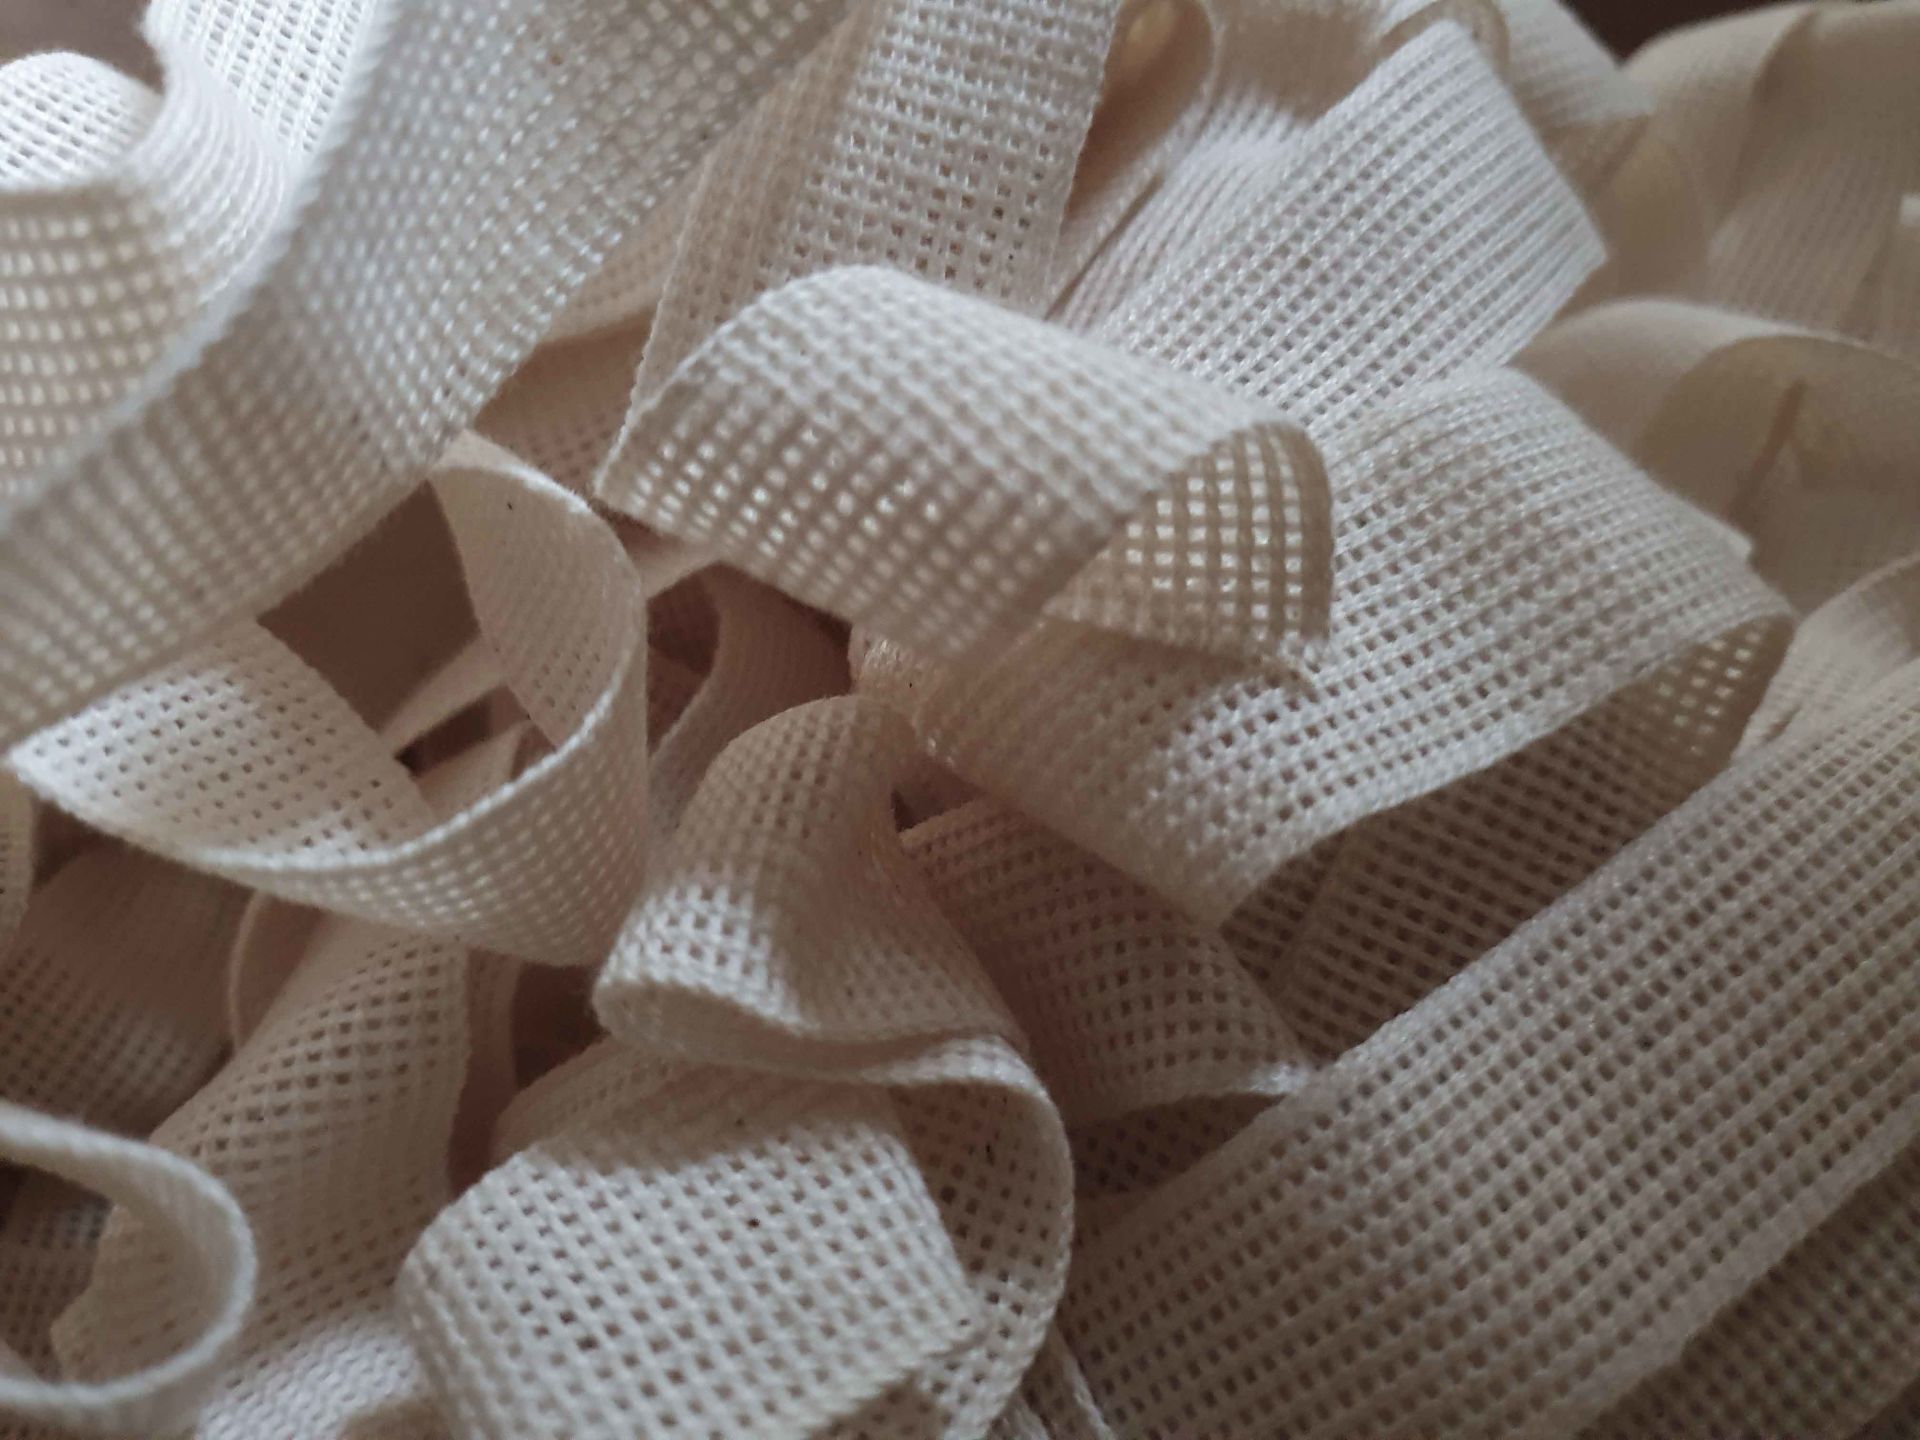 Baumwollband | Bindeband | 20 mm | 50 Meter | Naturweiß - Beige | Zum Verpacken und Dekorieren